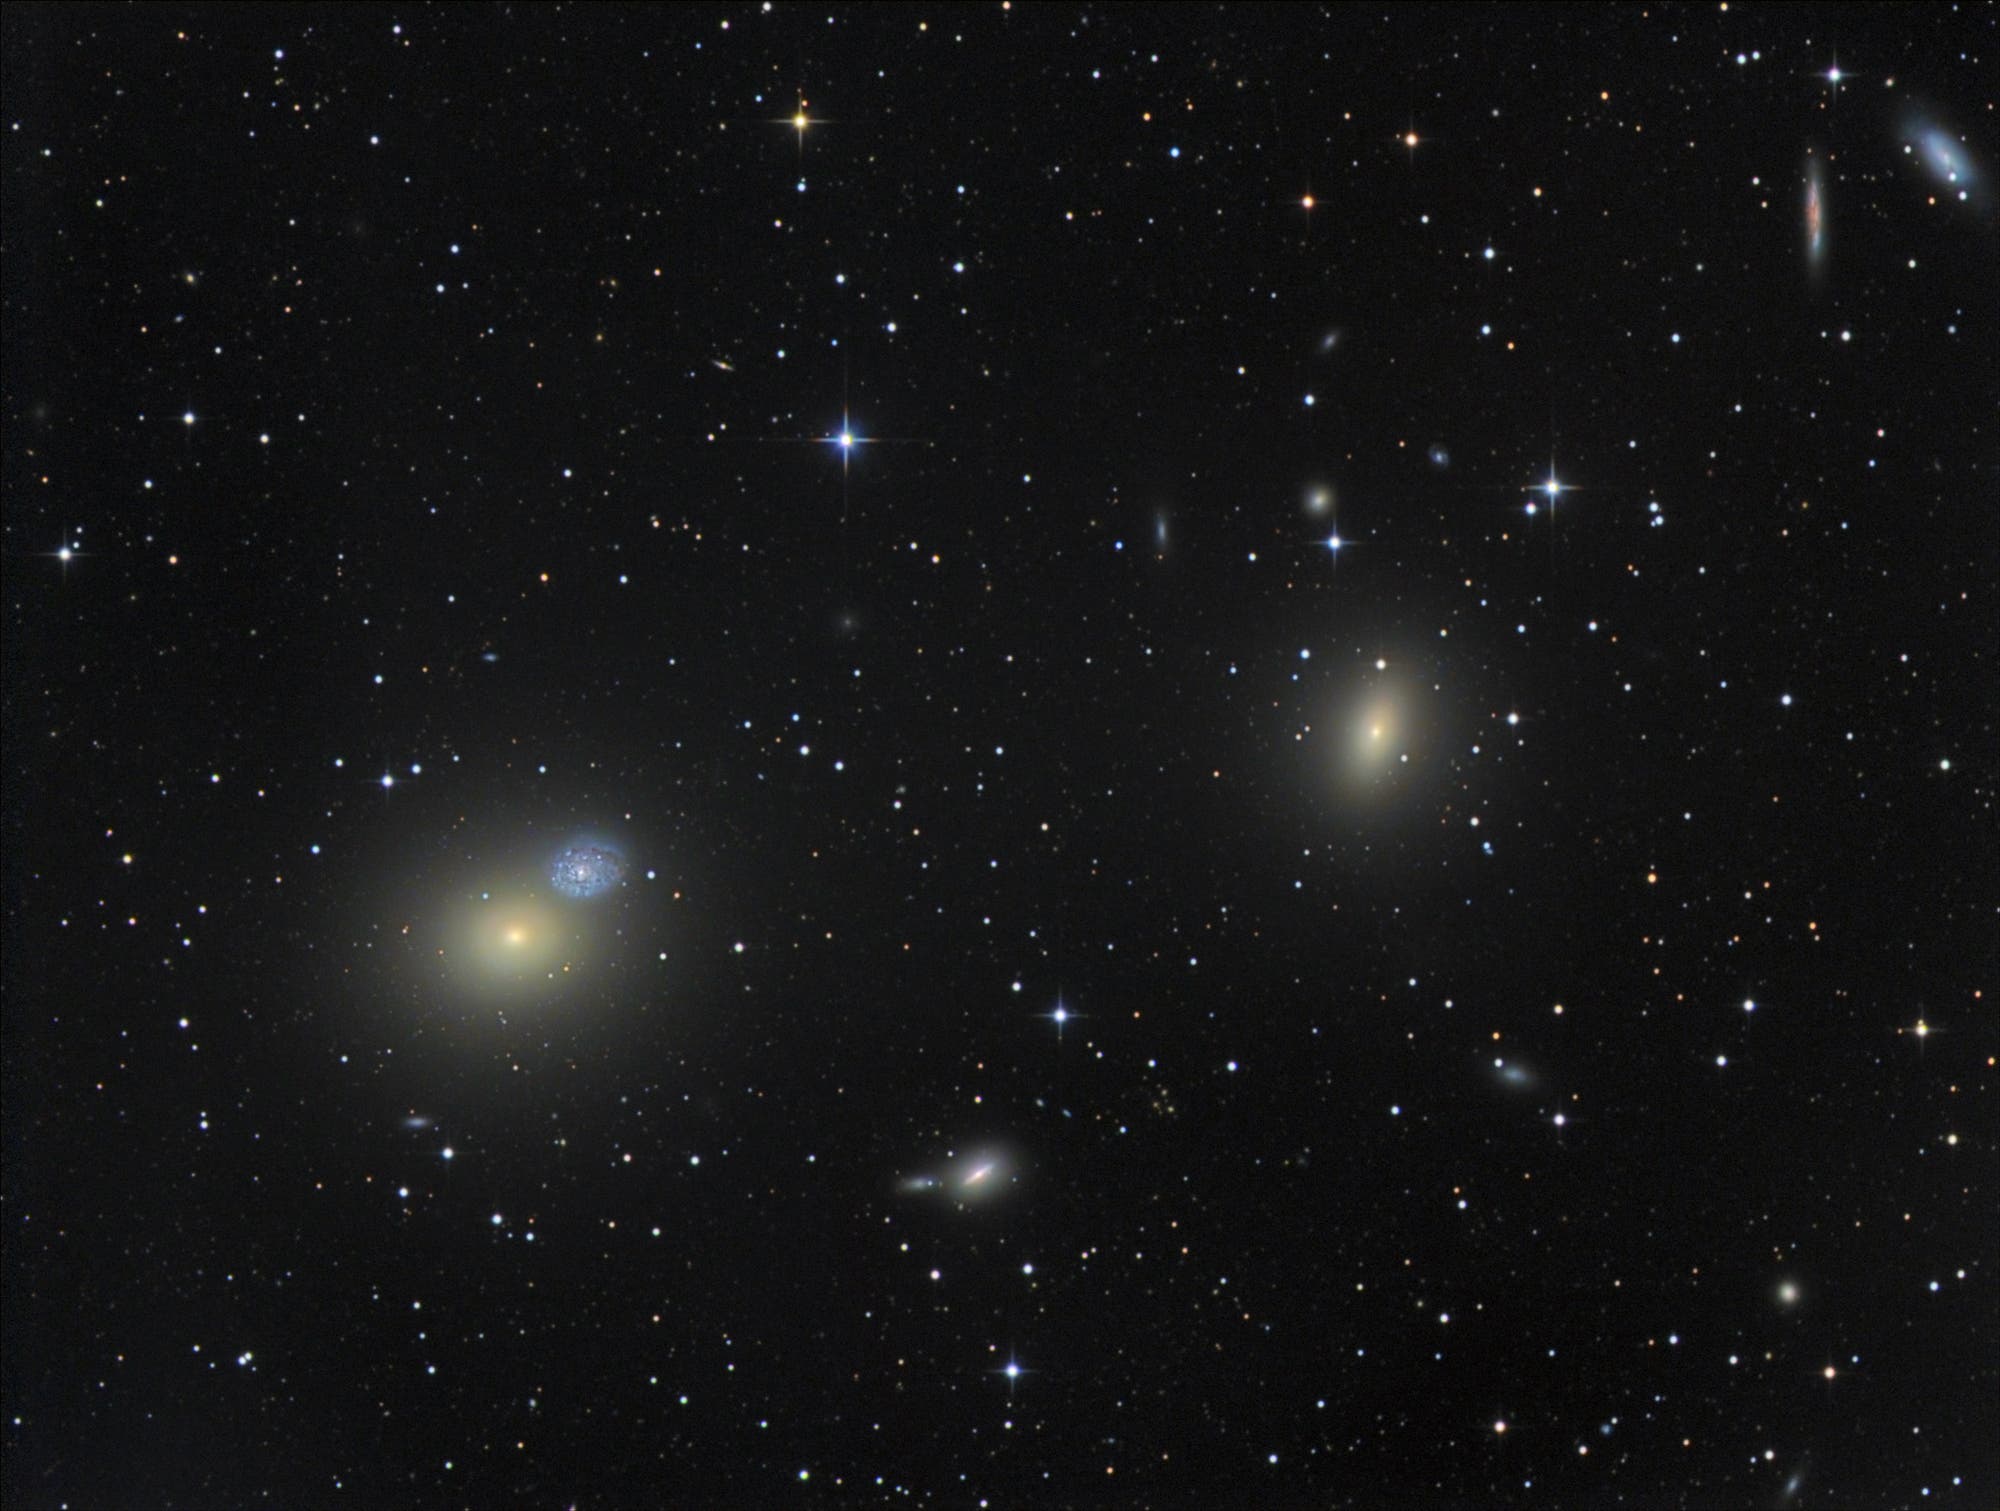 Galaxien Messier 59, Messier 60 und NGC 4647 mit NGC 4637 und NGC 4638